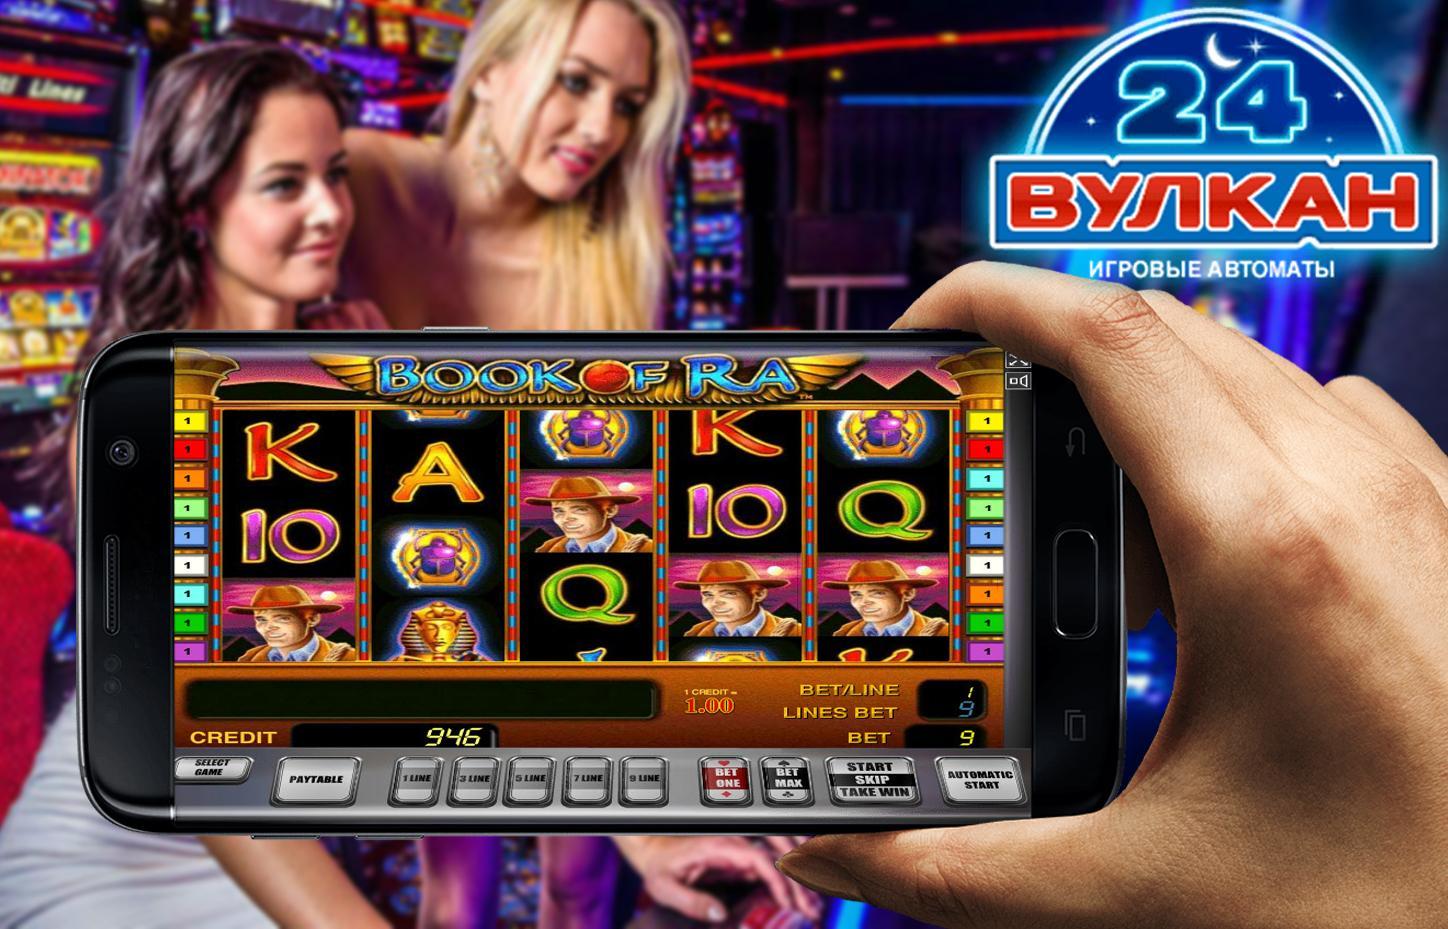 Интернет-казино со снятием выигрышей на кошелек Киви